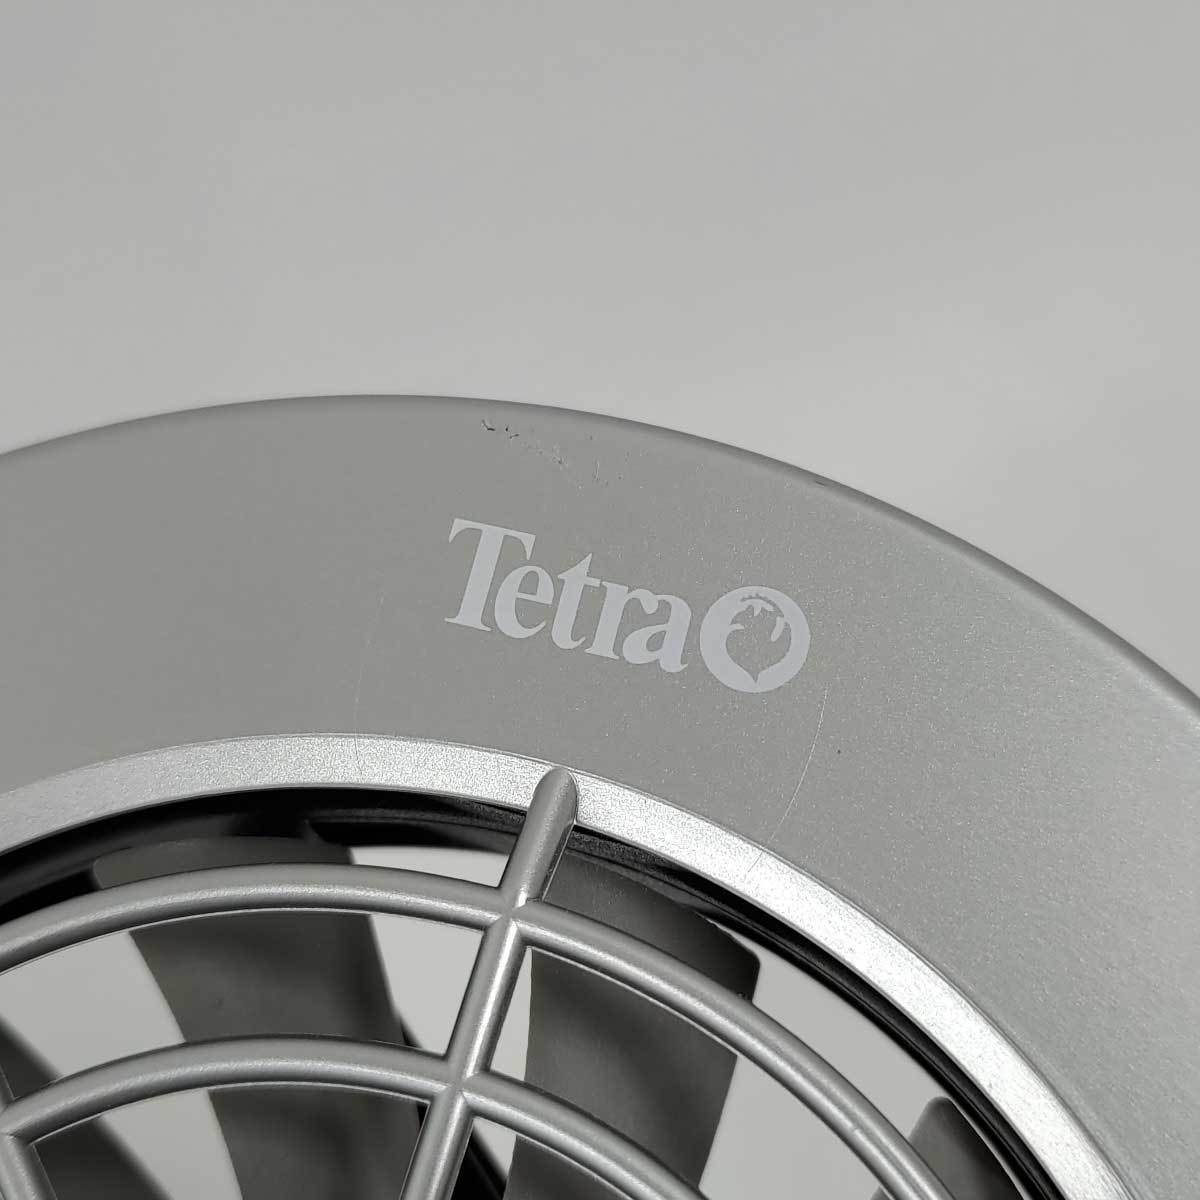 [ б/у ] Tetra прохладный вентилятор CF-60N TETRA 50/60Hz